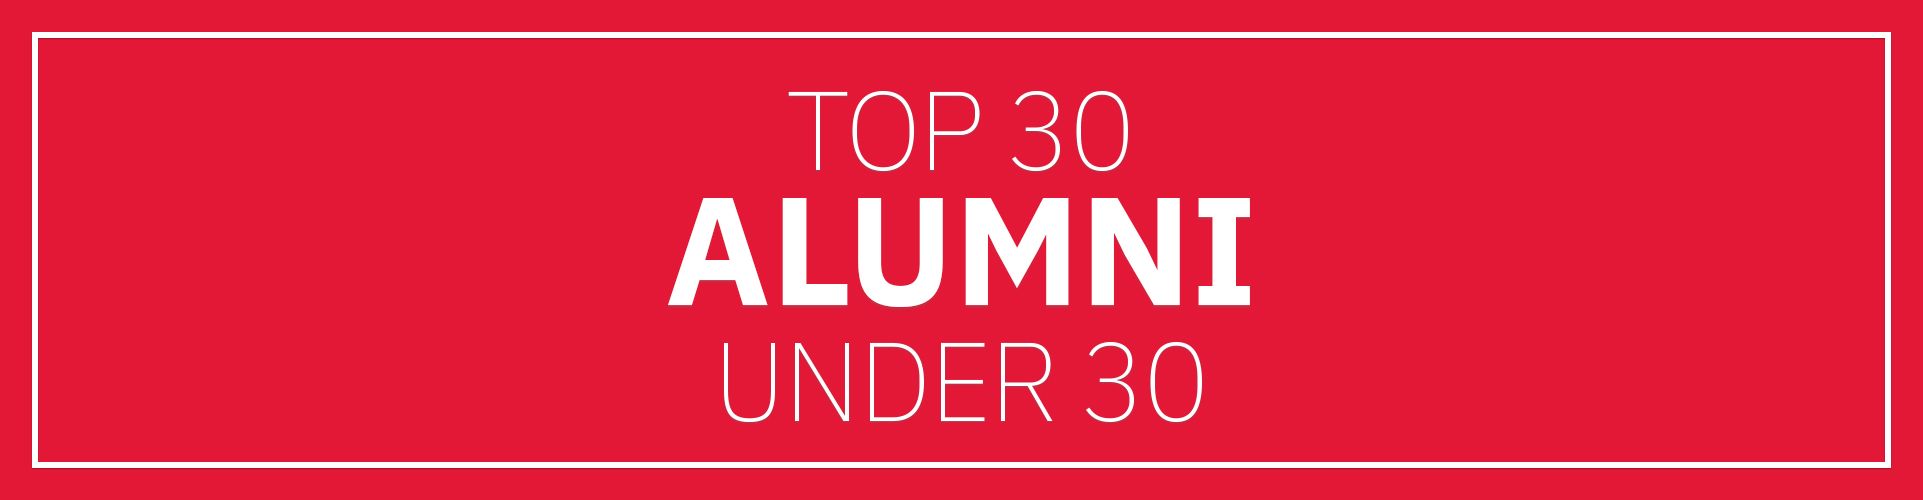 Top 30 alumni under 30 banner